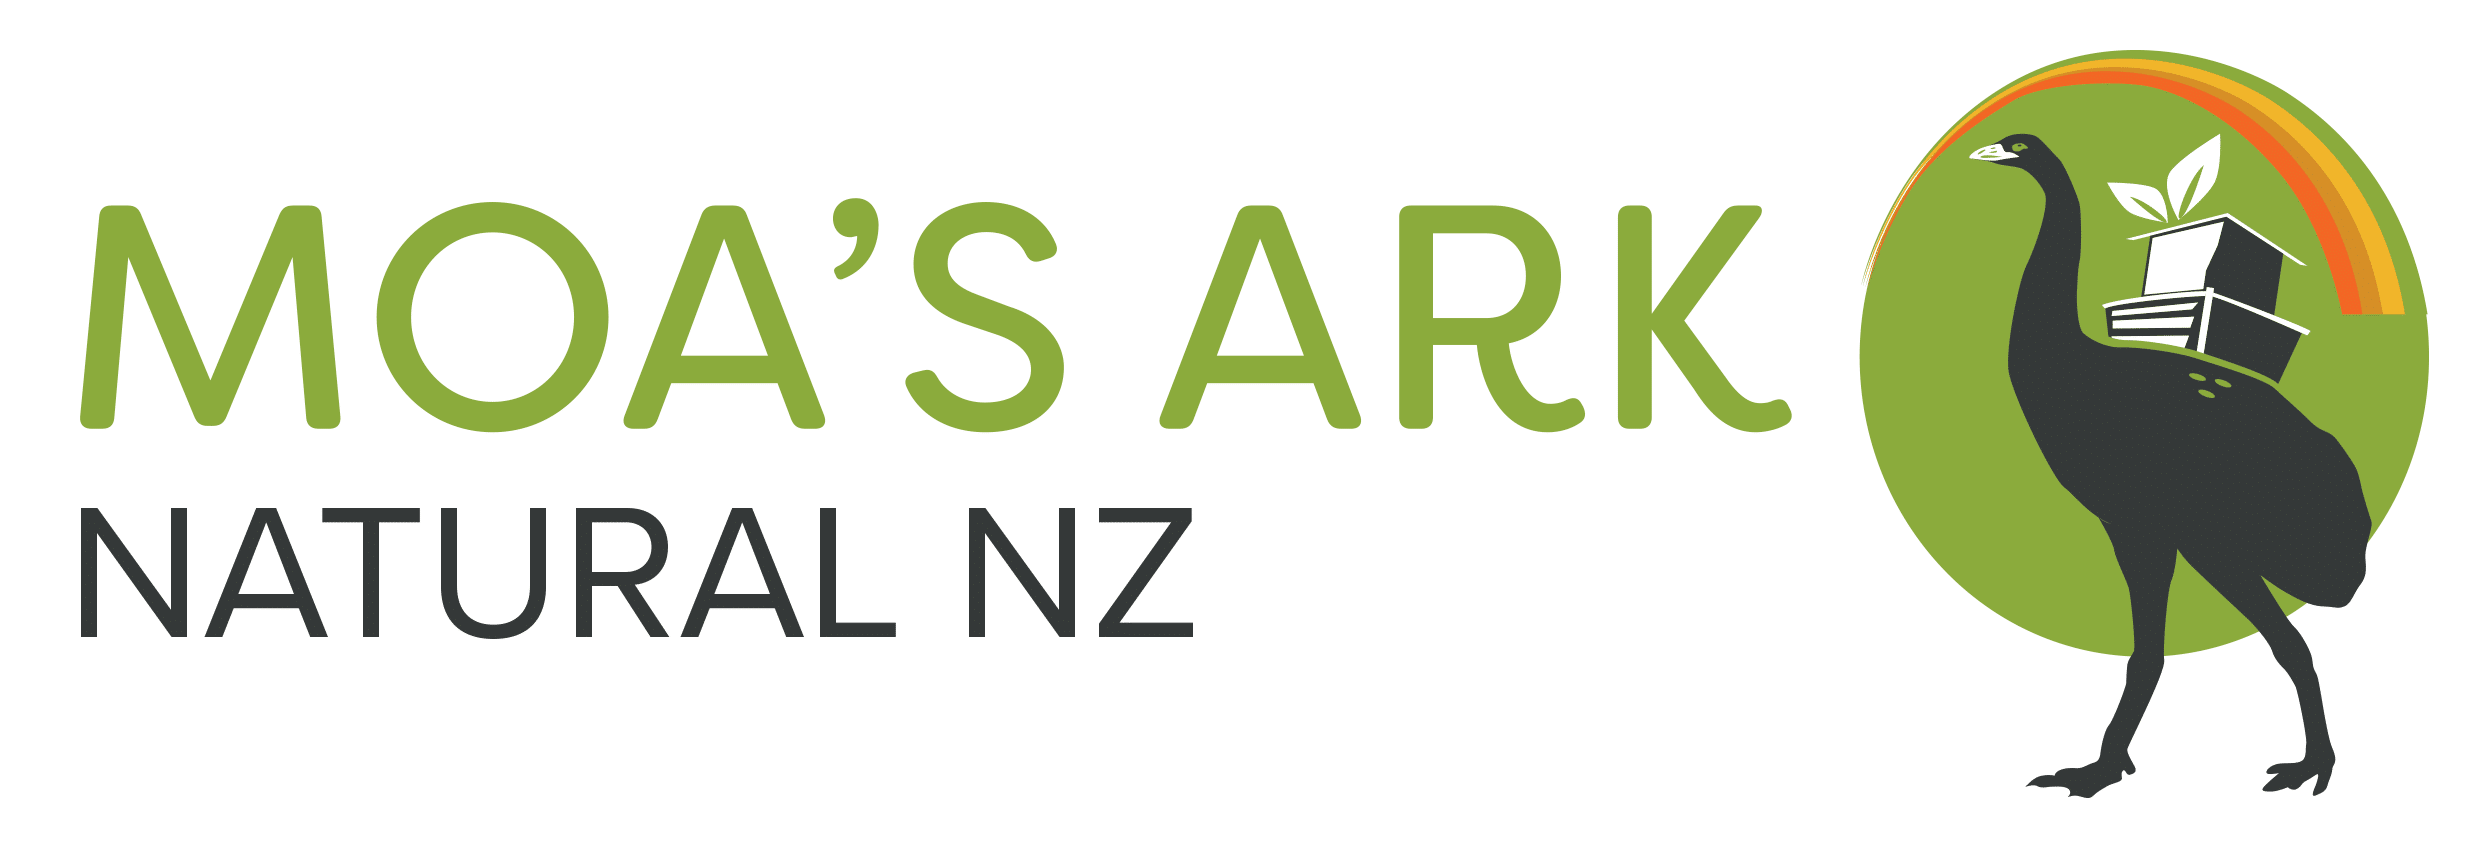 Moas Ark Natural NZ